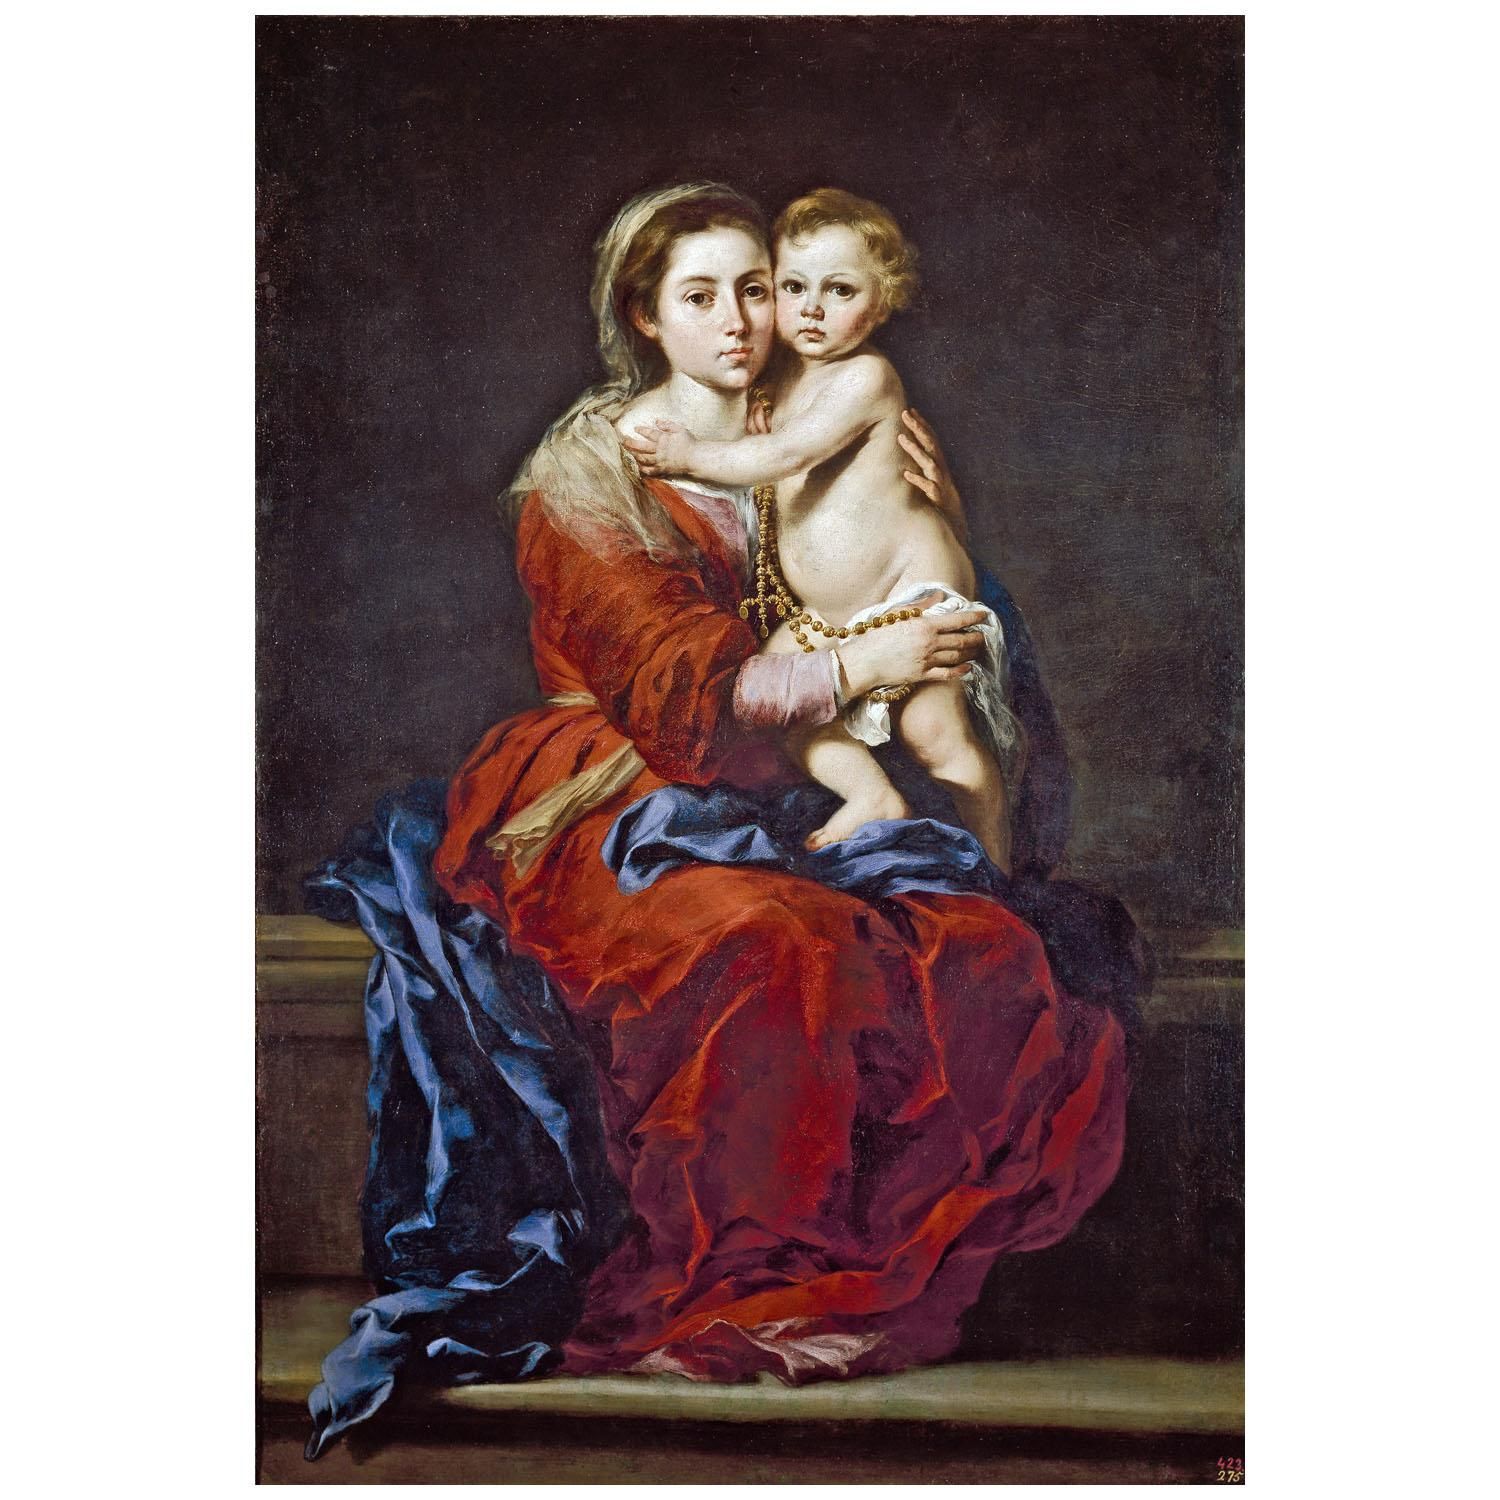 Bartolome Esteban Murillo. La Virgen del Rosario. 1650. Museo del Prado